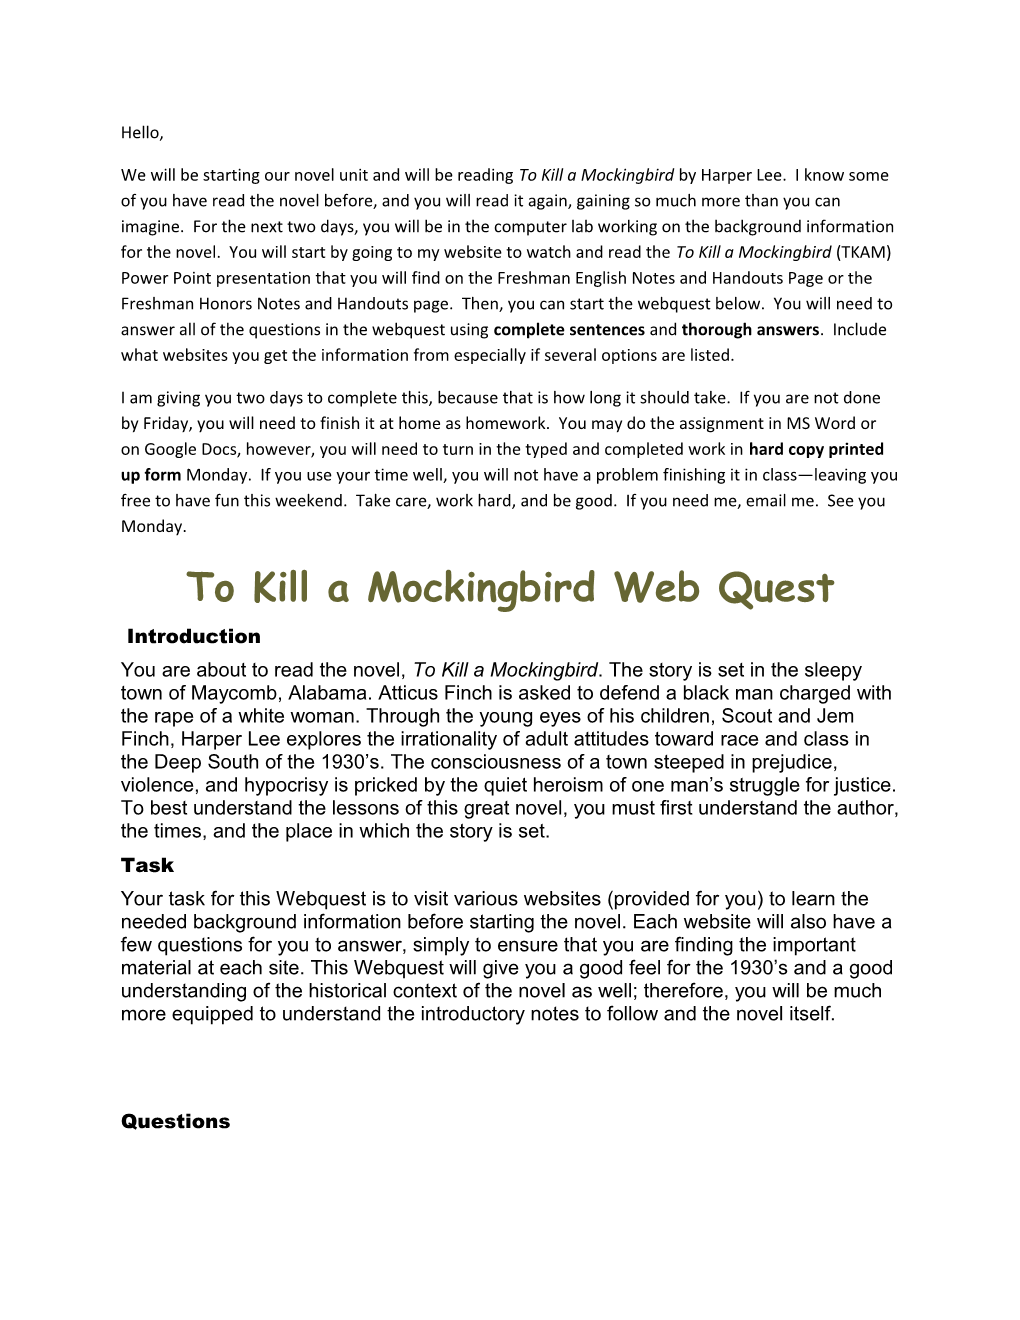 To Kill a Mockingbird Web Quest